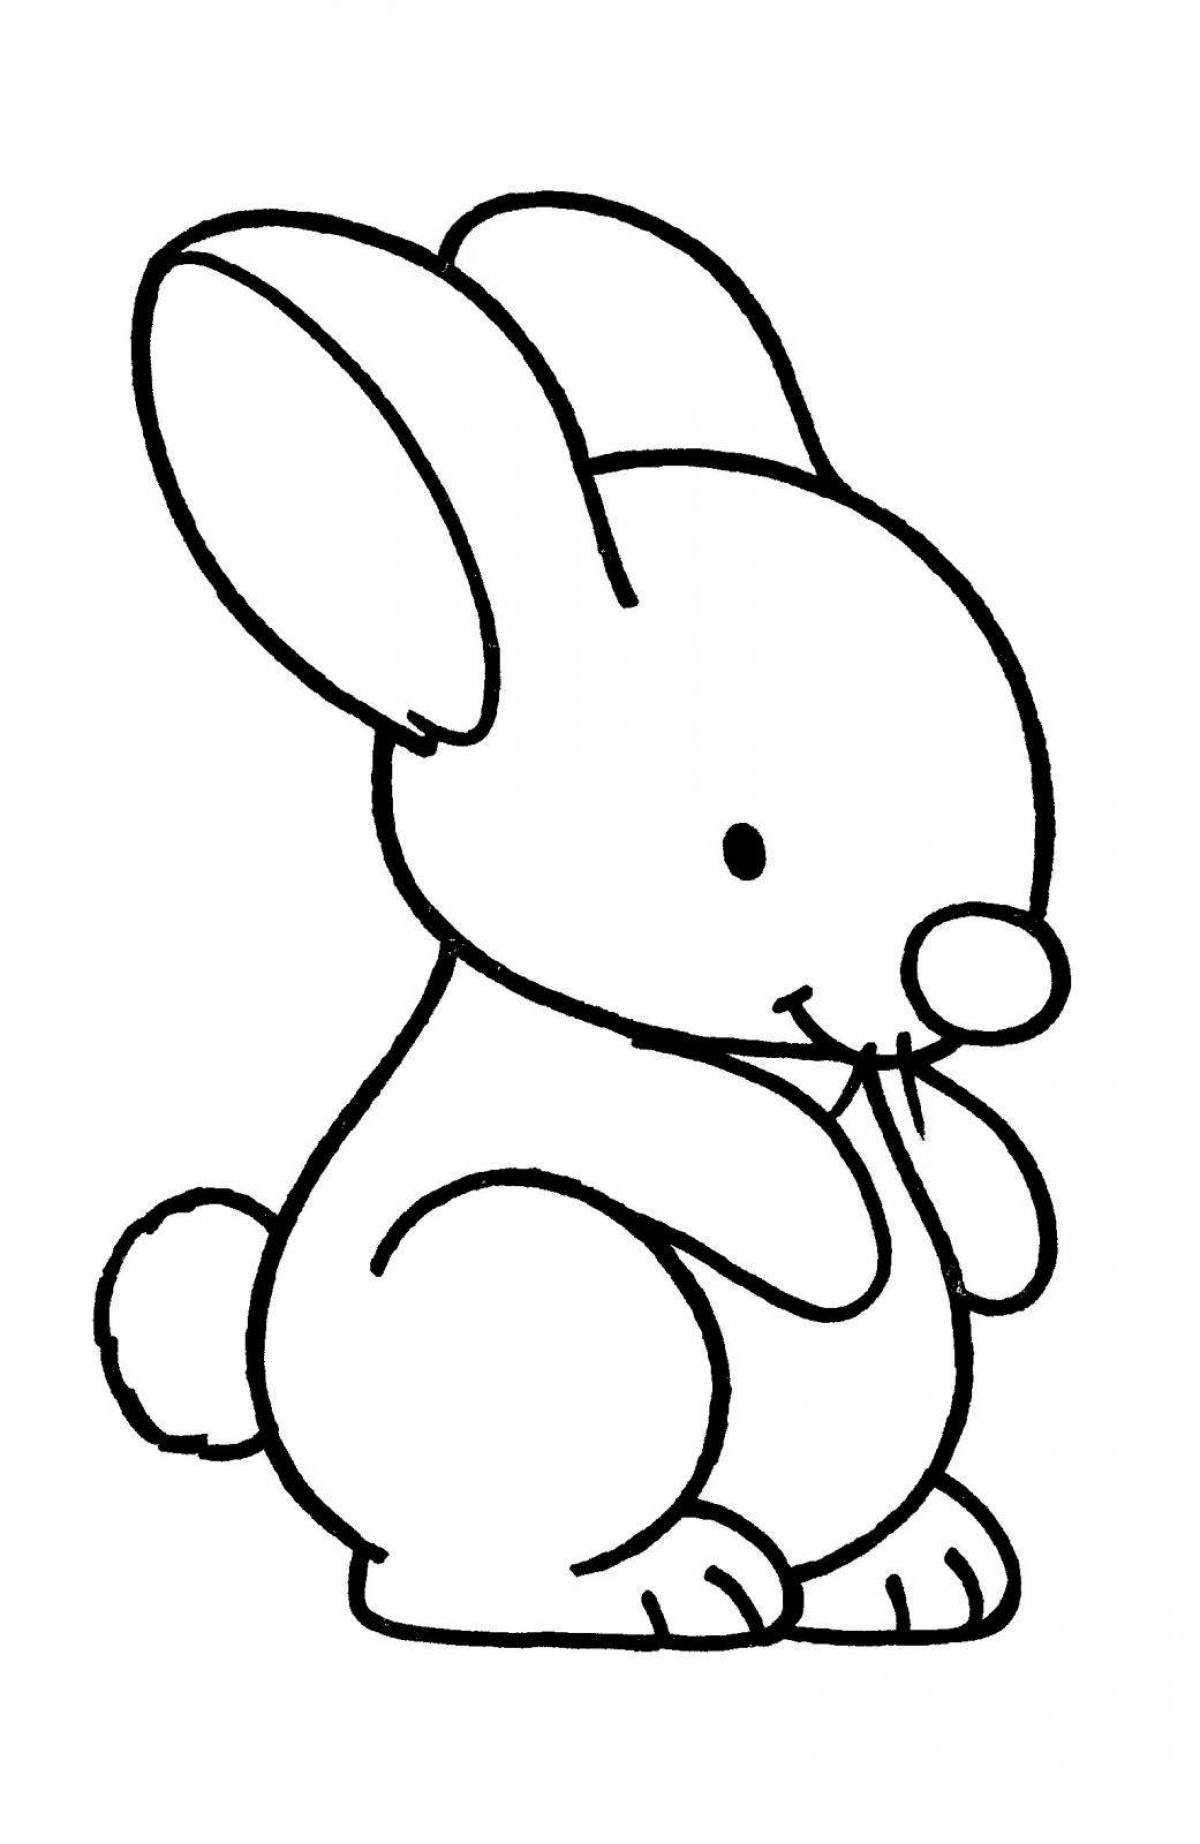 Великолепная раскраска кролик для детей 3-4 лет